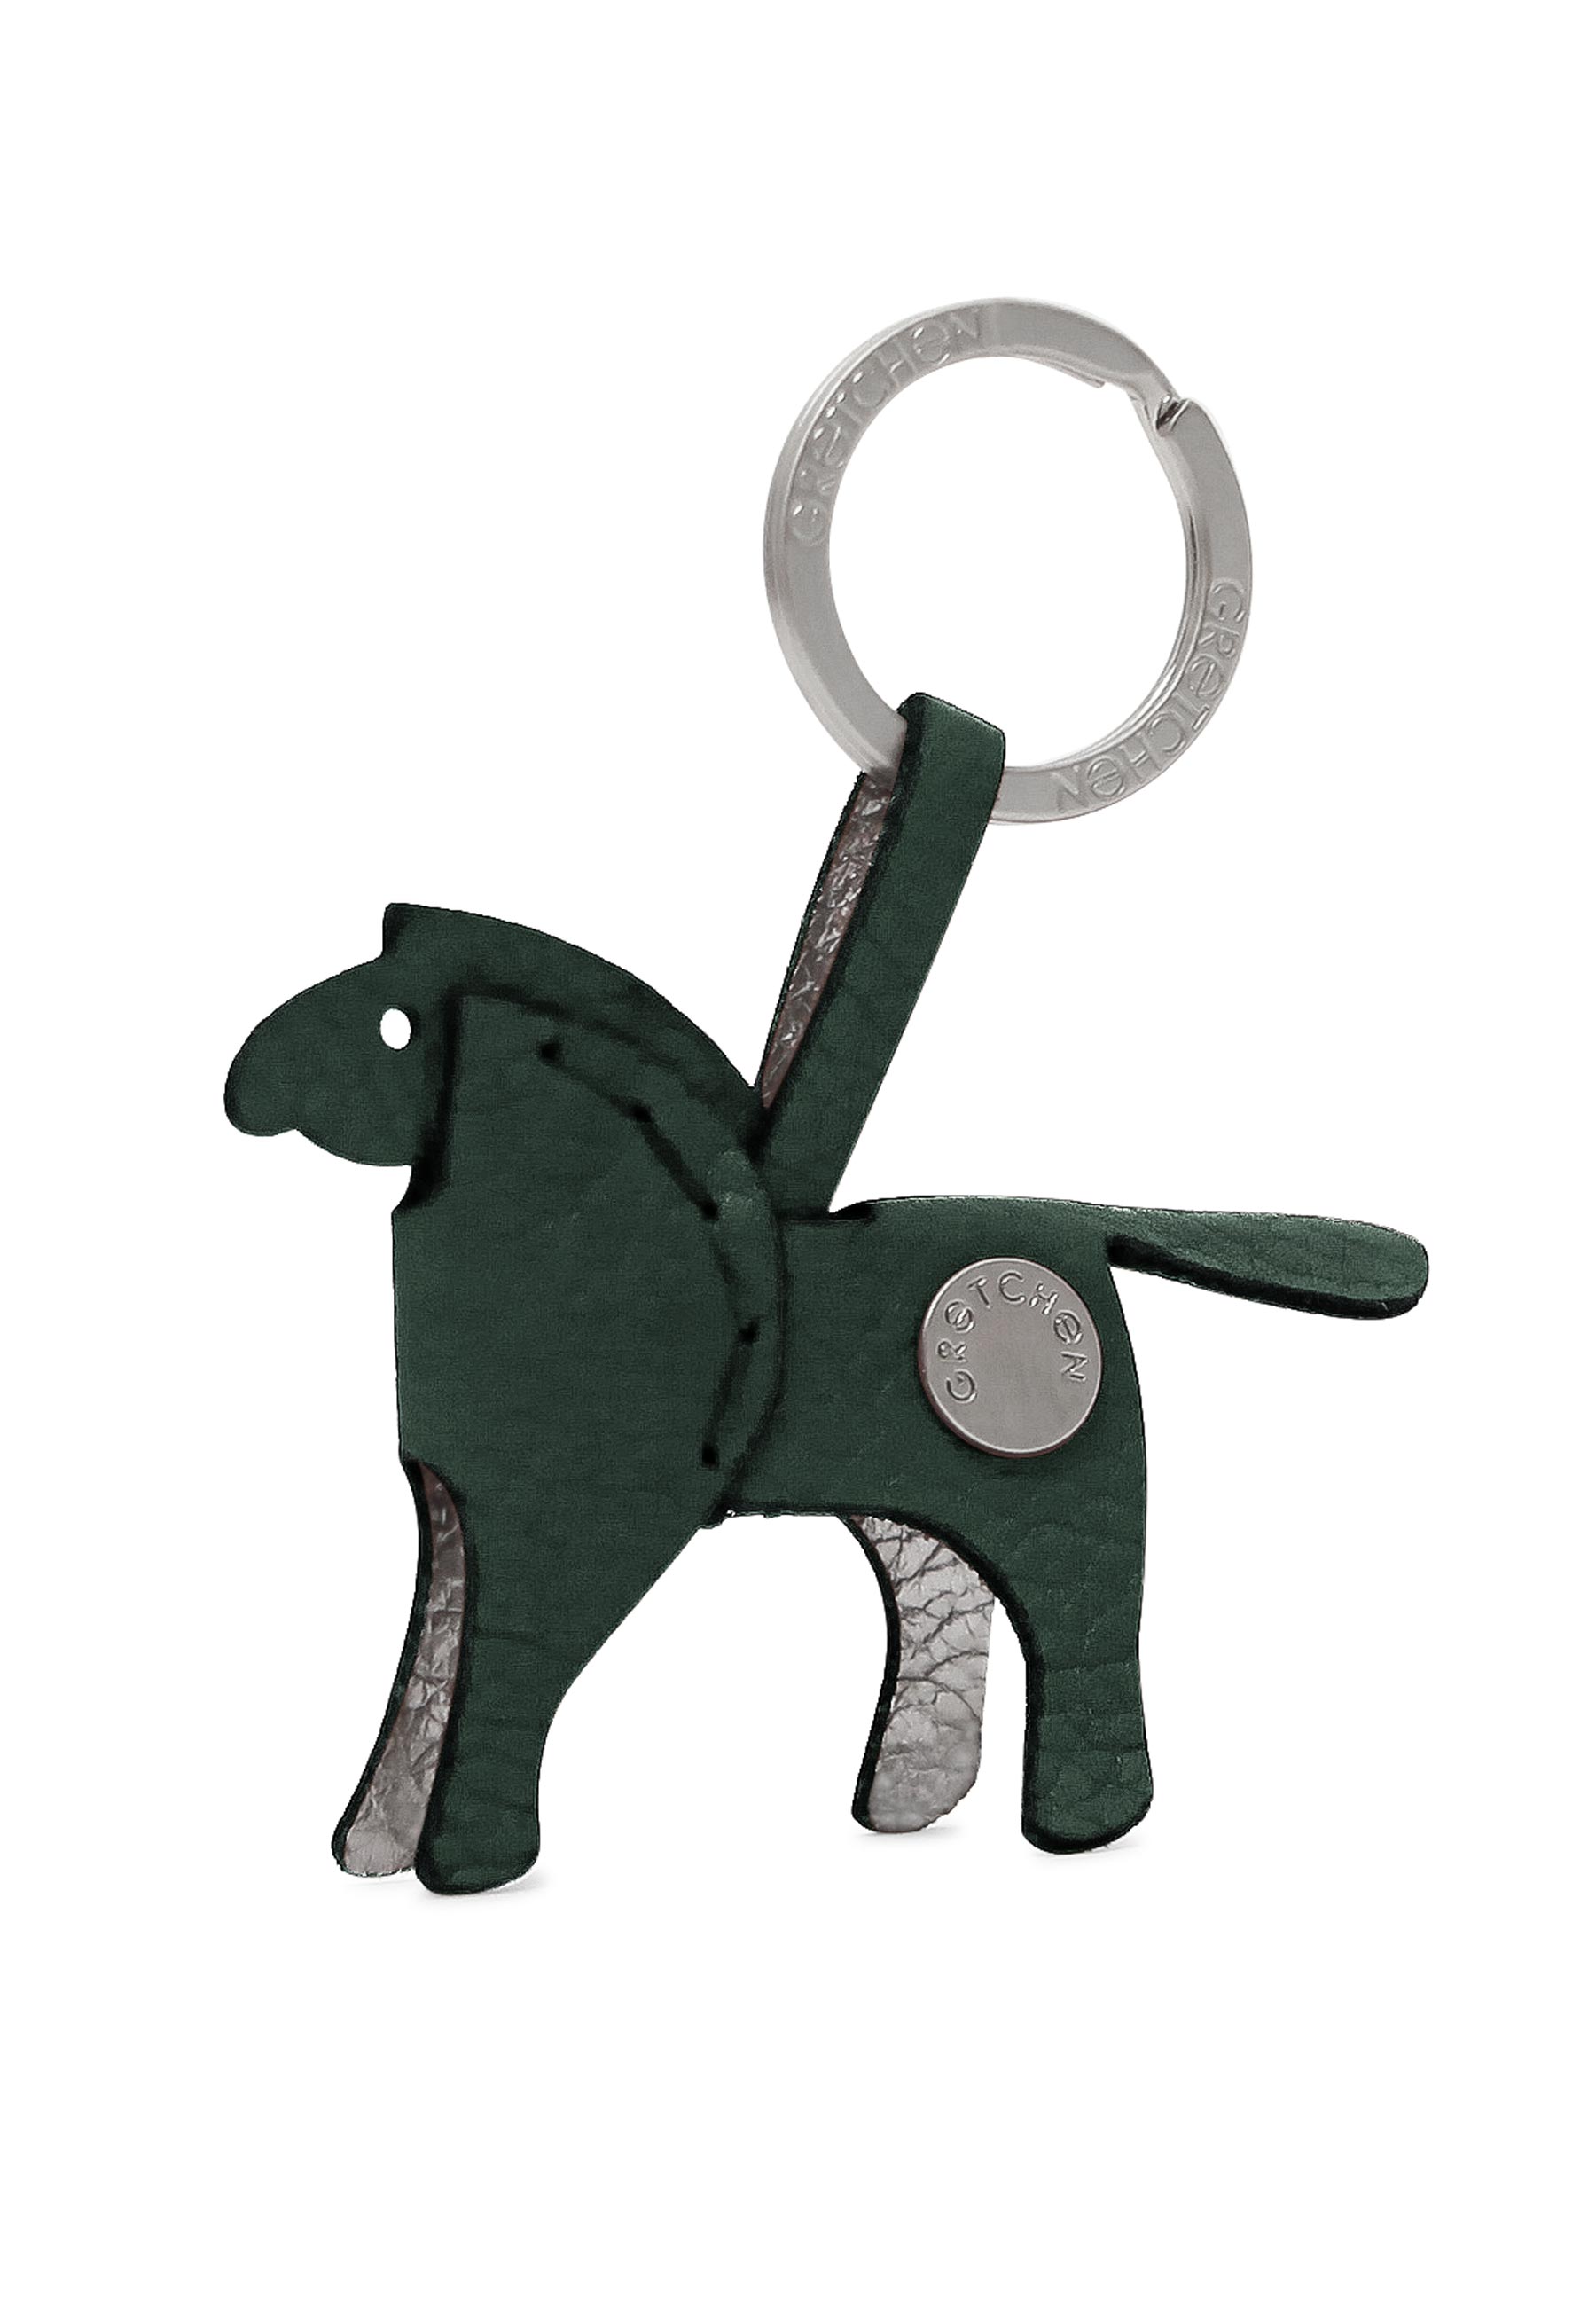 Hochwertiger Schlüsselanhänger in Pony-From von mygretchen.com | Gretchen